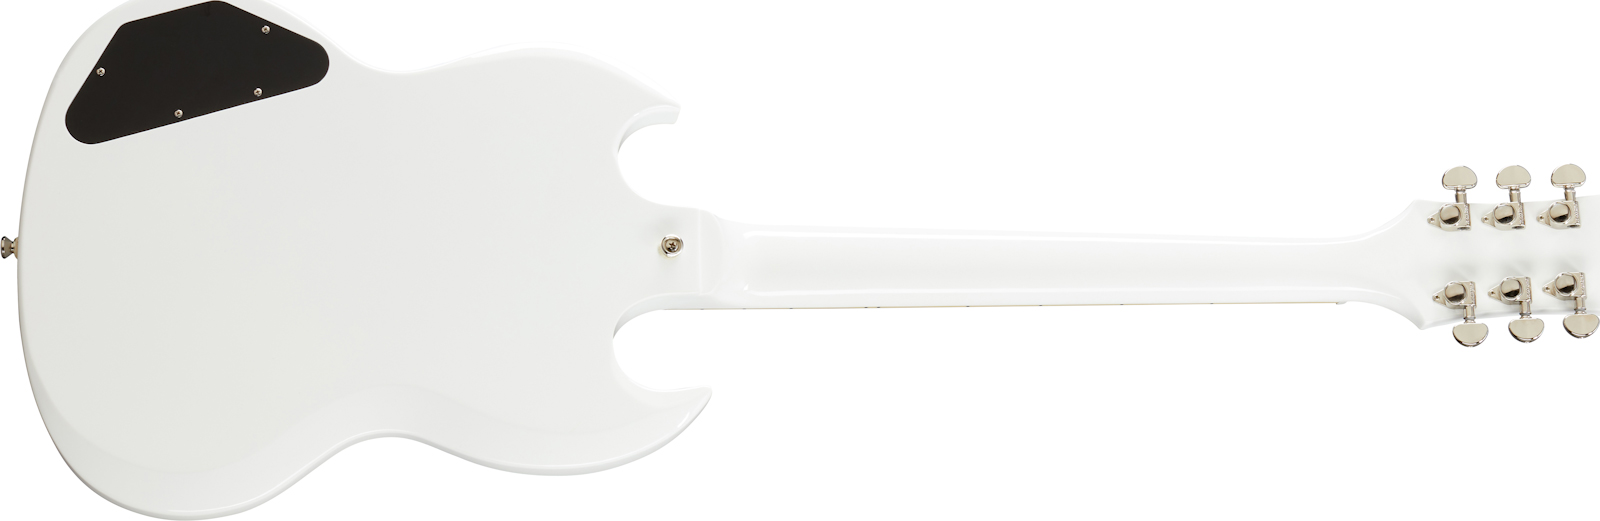 Epiphone Sg Standard 2h Ht Lau - Alpine White - Guitare Électrique Double Cut - Variation 1